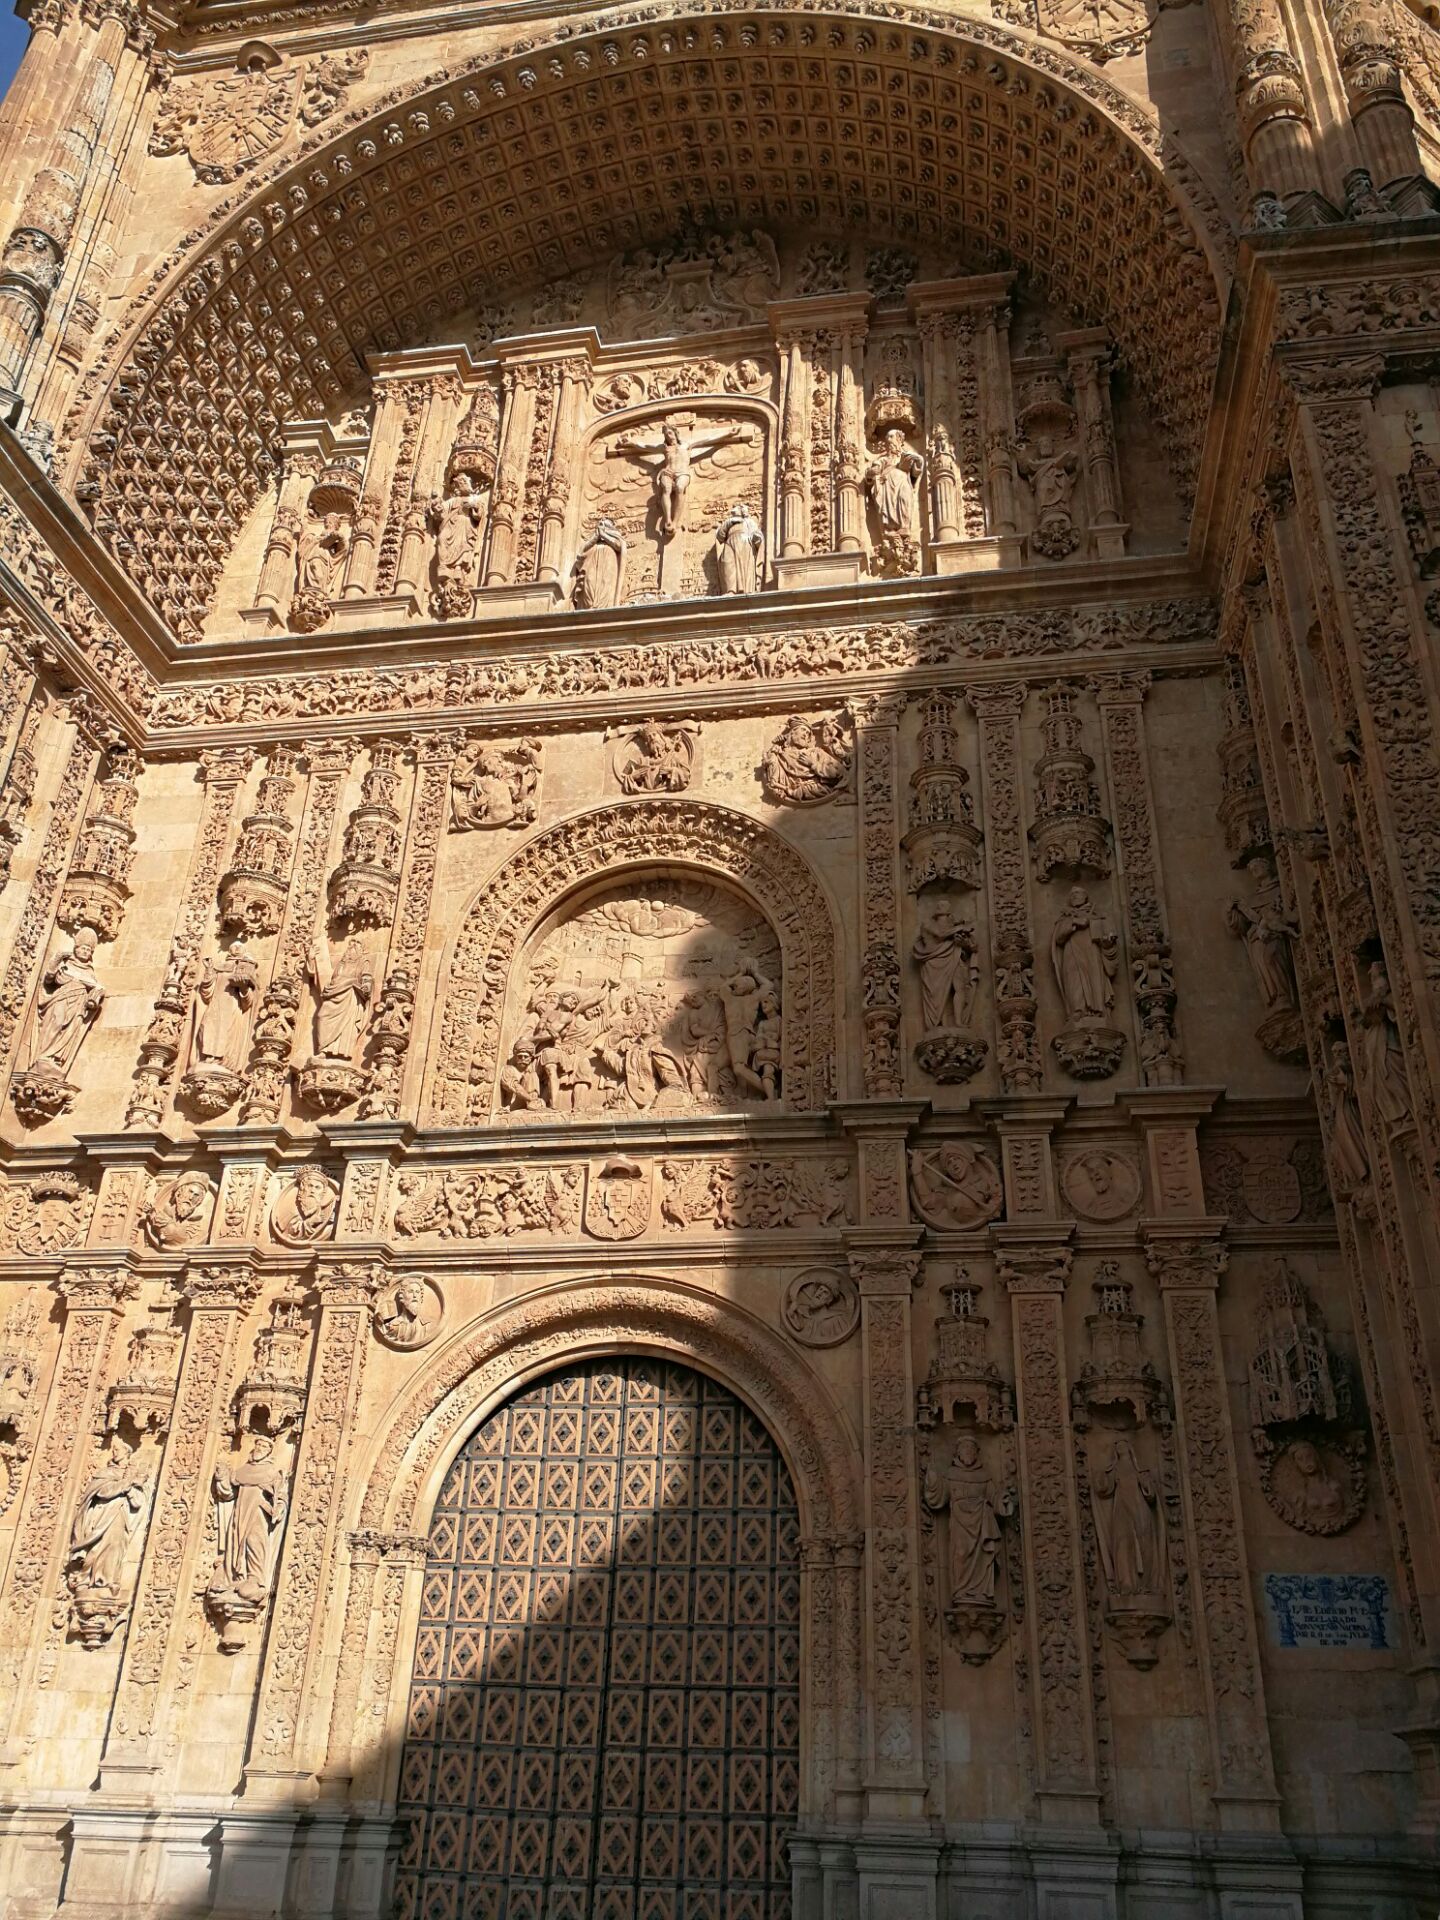 萨拉曼卡大教堂是西班牙最著名的一座教堂，出名是因为在这座教堂的浮雕上有许多神秘的雕像，譬如说宇航员等